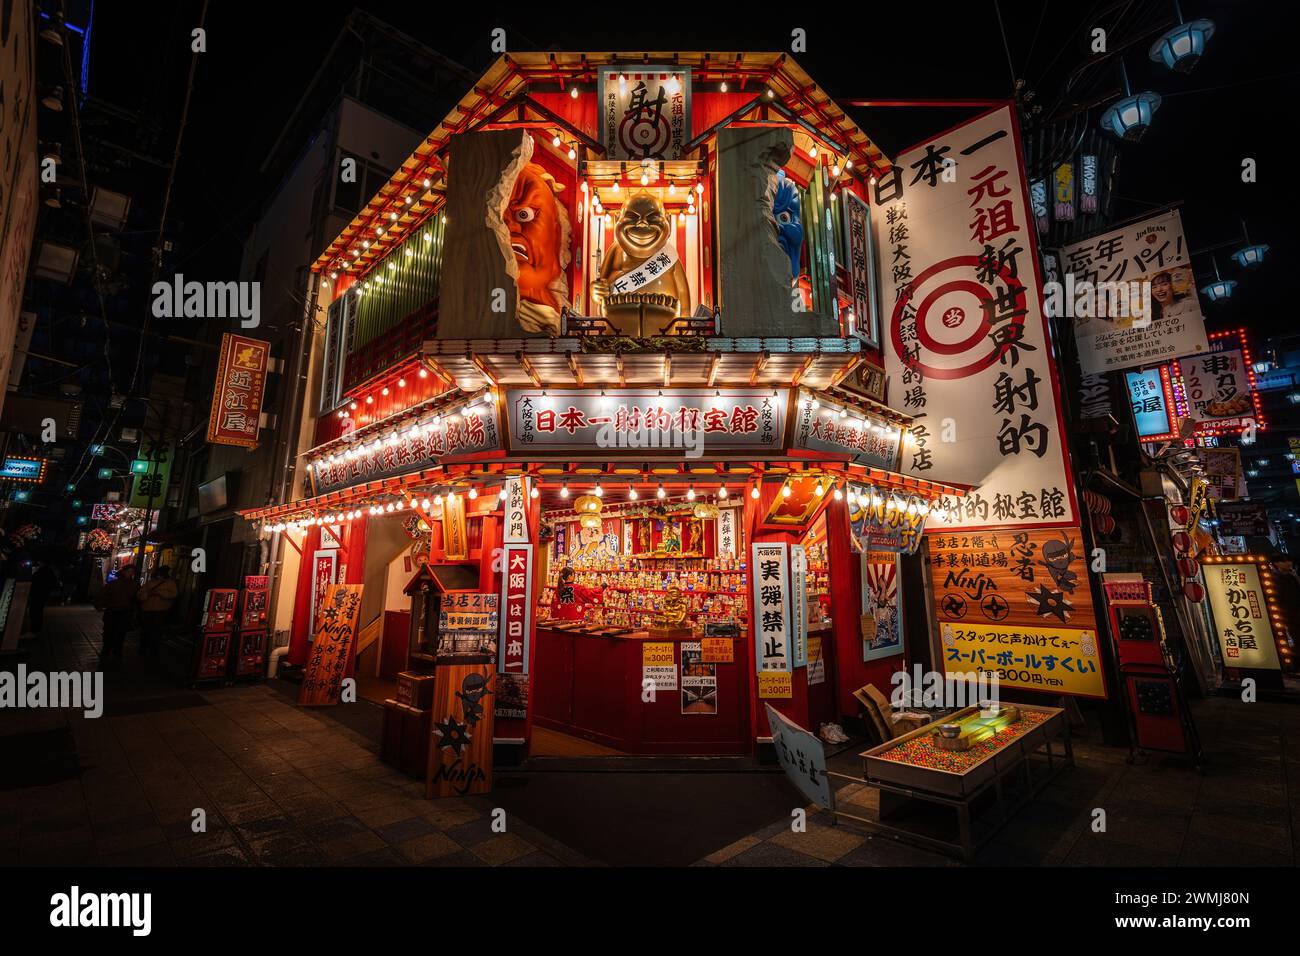 Galleria fotografica illuminata di notte nel quartiere Shinsekai "nuovo mondo" di Osaka, Giappone. Foto Stock